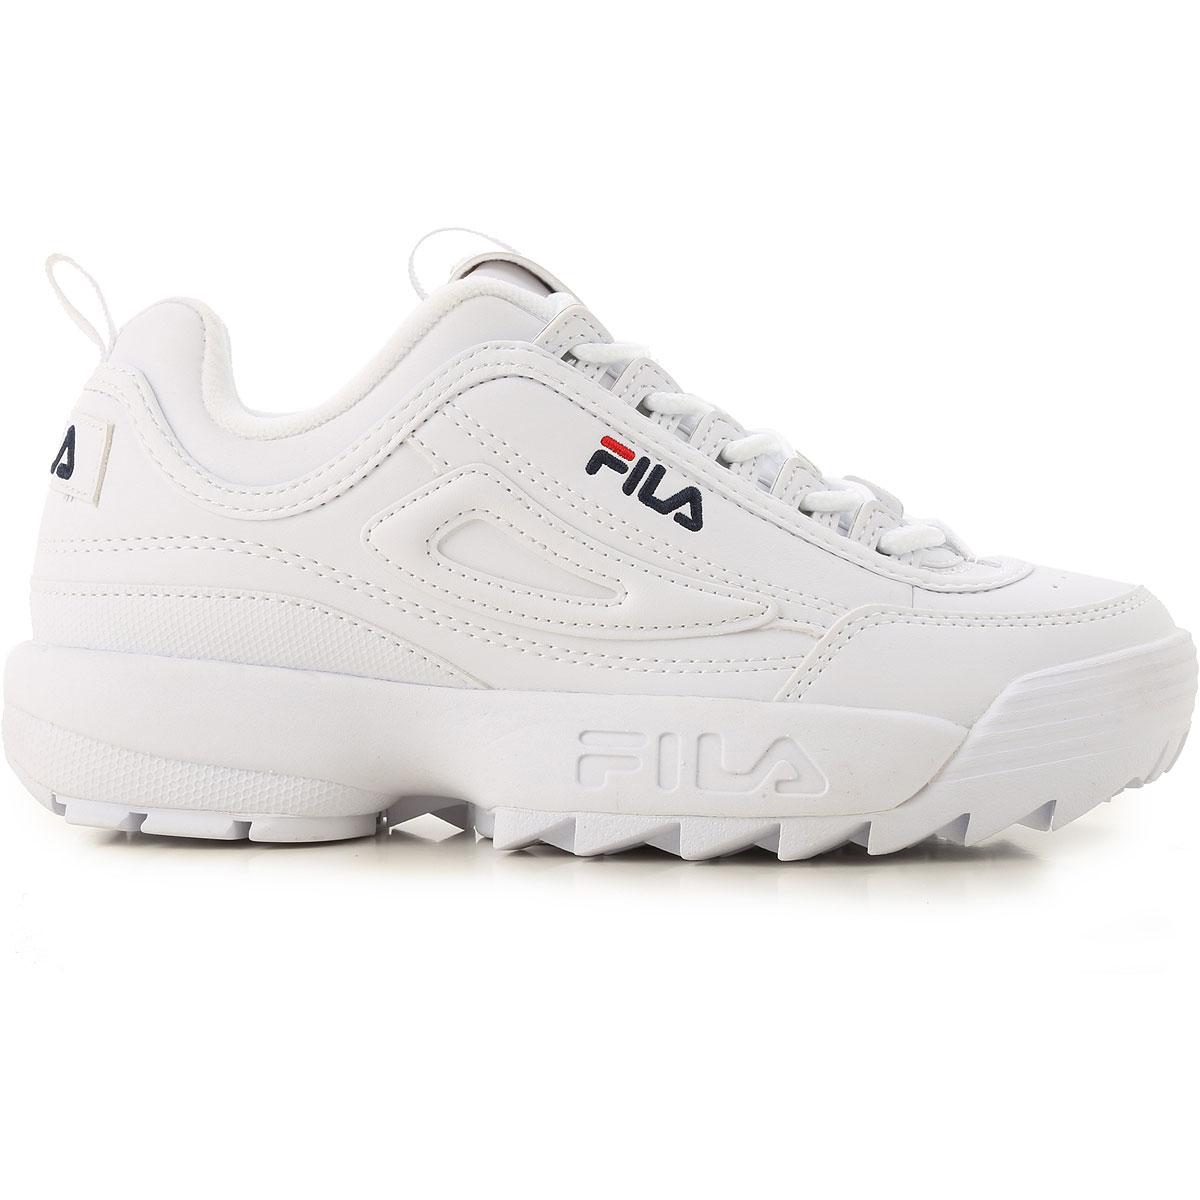 Fila Sneakers For Women On Sale in White - Lyst